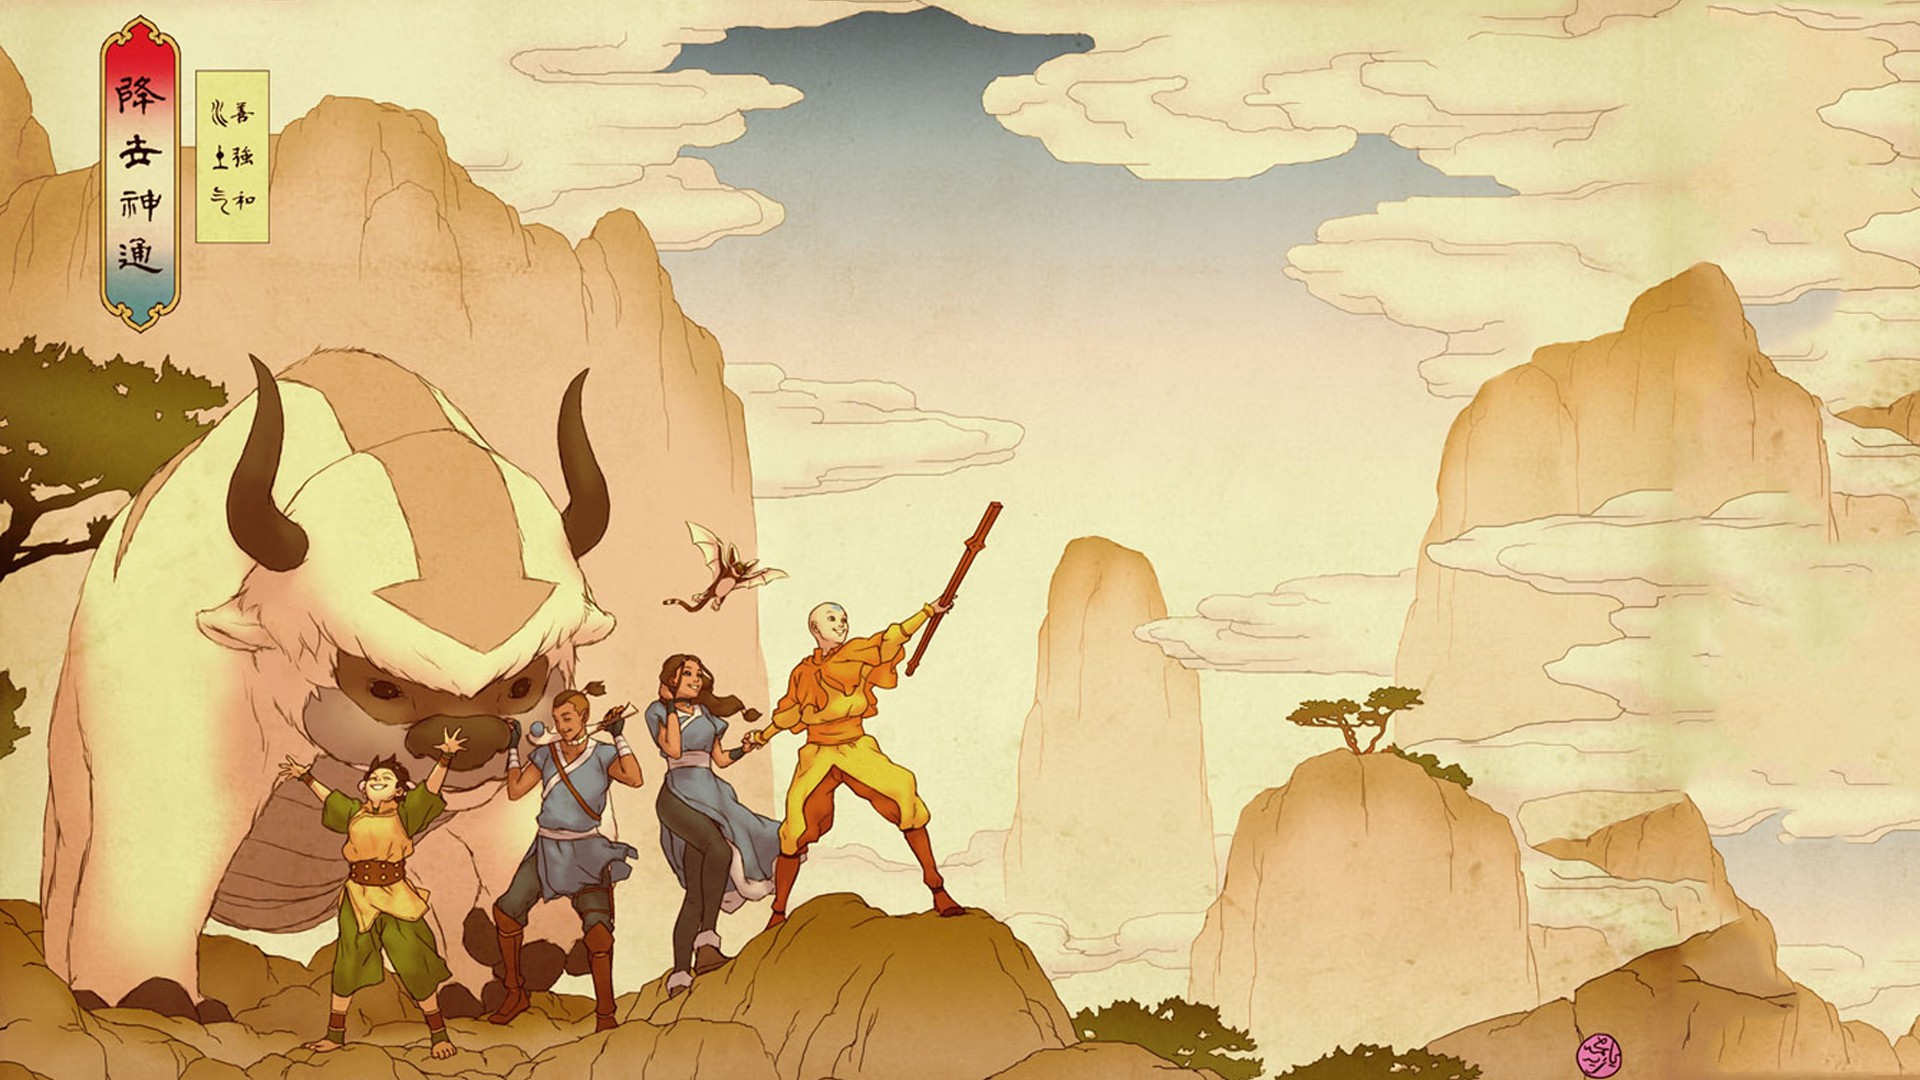 General 1920x1080 Avatar: The Last Airbender landscape cartoon TV series fantasy girl fantasy men